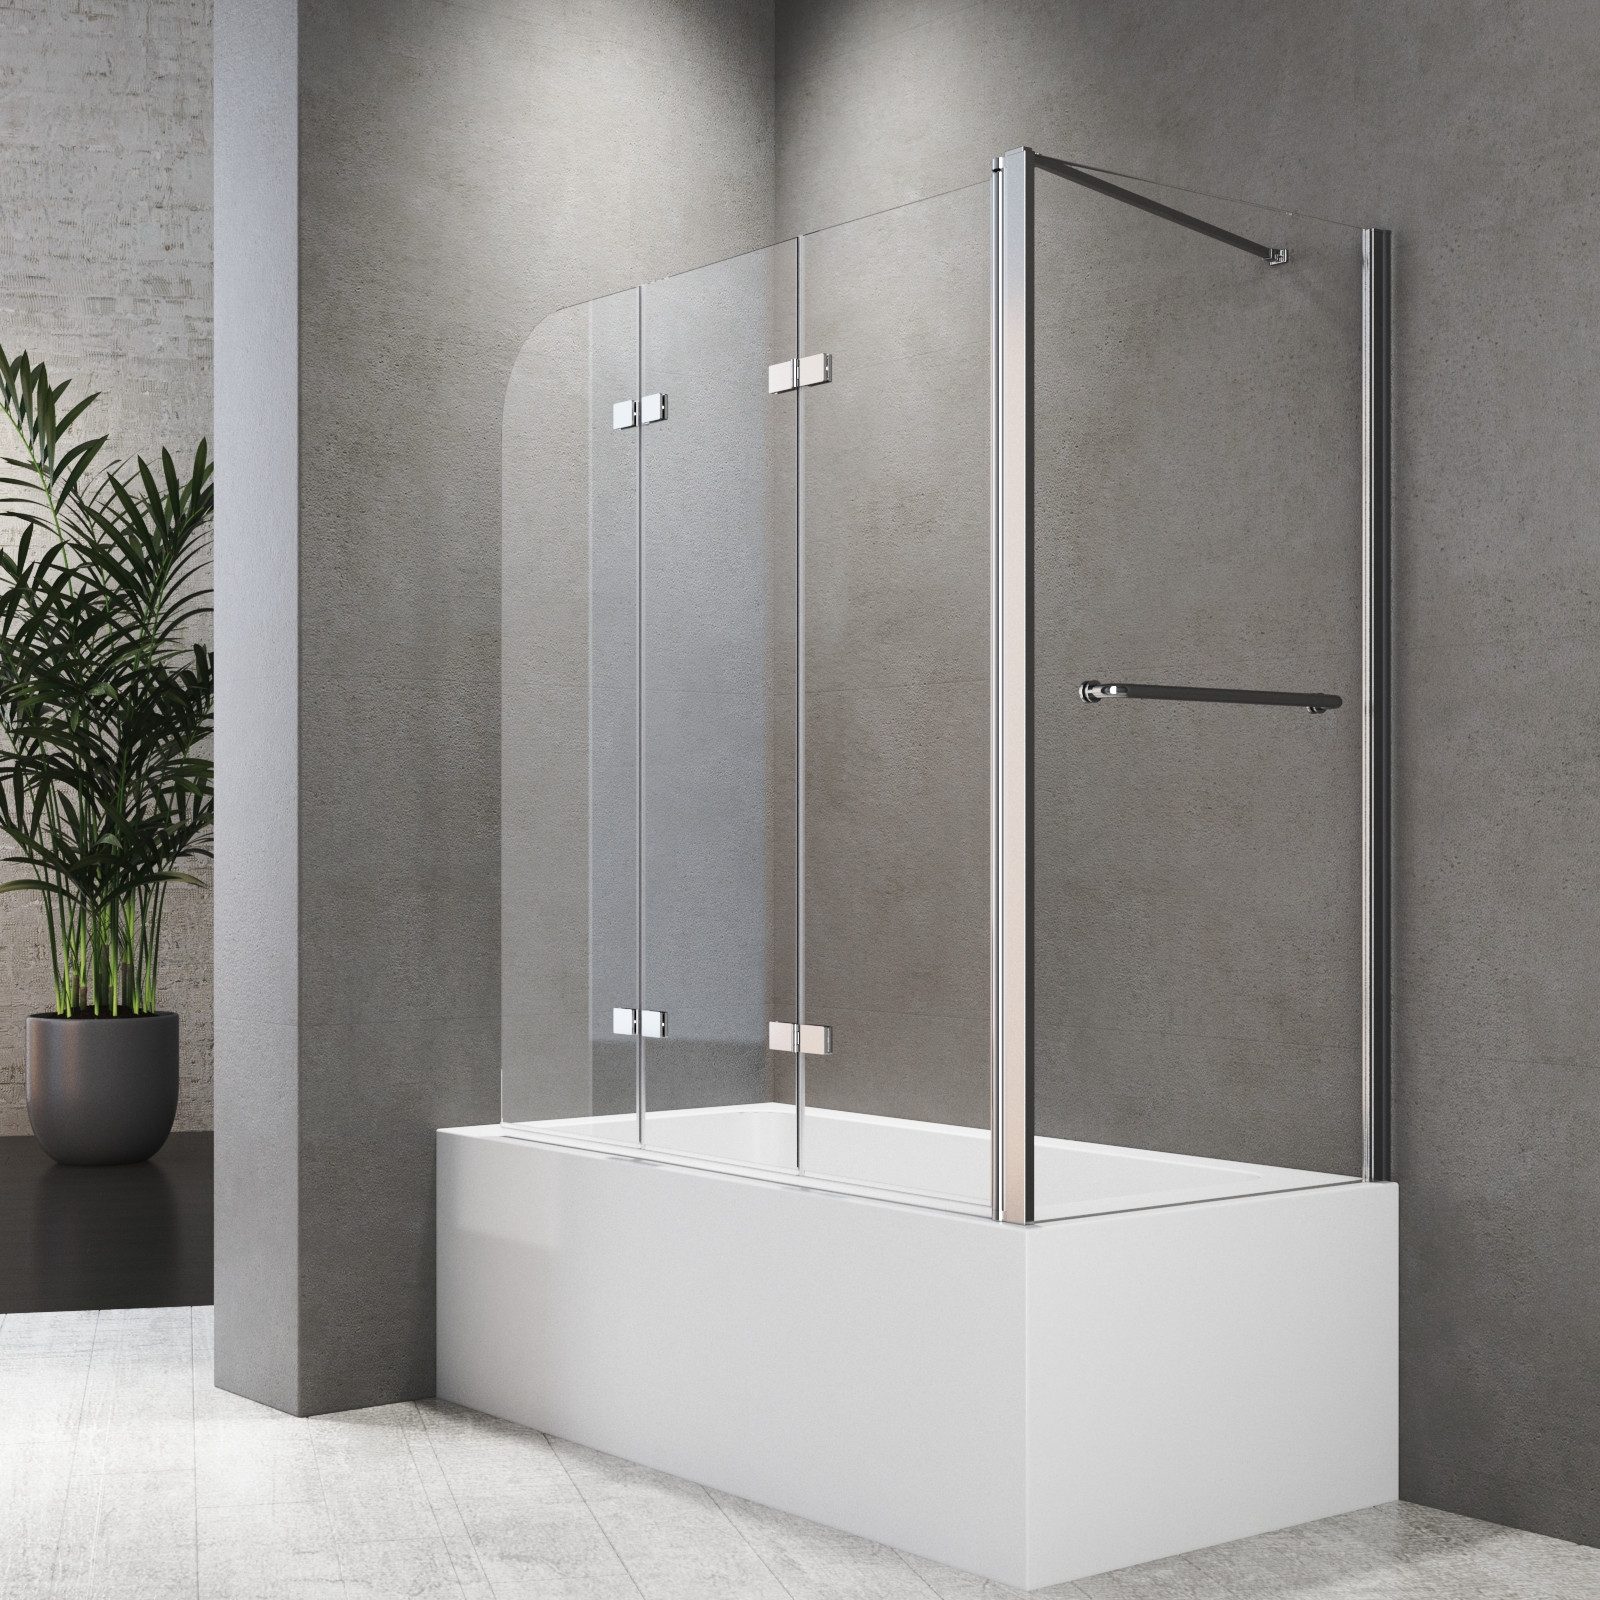 Boromal Badewannenfaltwand 3 teilig Klarglas Badewannenaufsatz mit Seitenwand Handtuchhalter, 6mm beideseitig Nano Glas, 180° faltbar, Hebe-/Senkmechanik